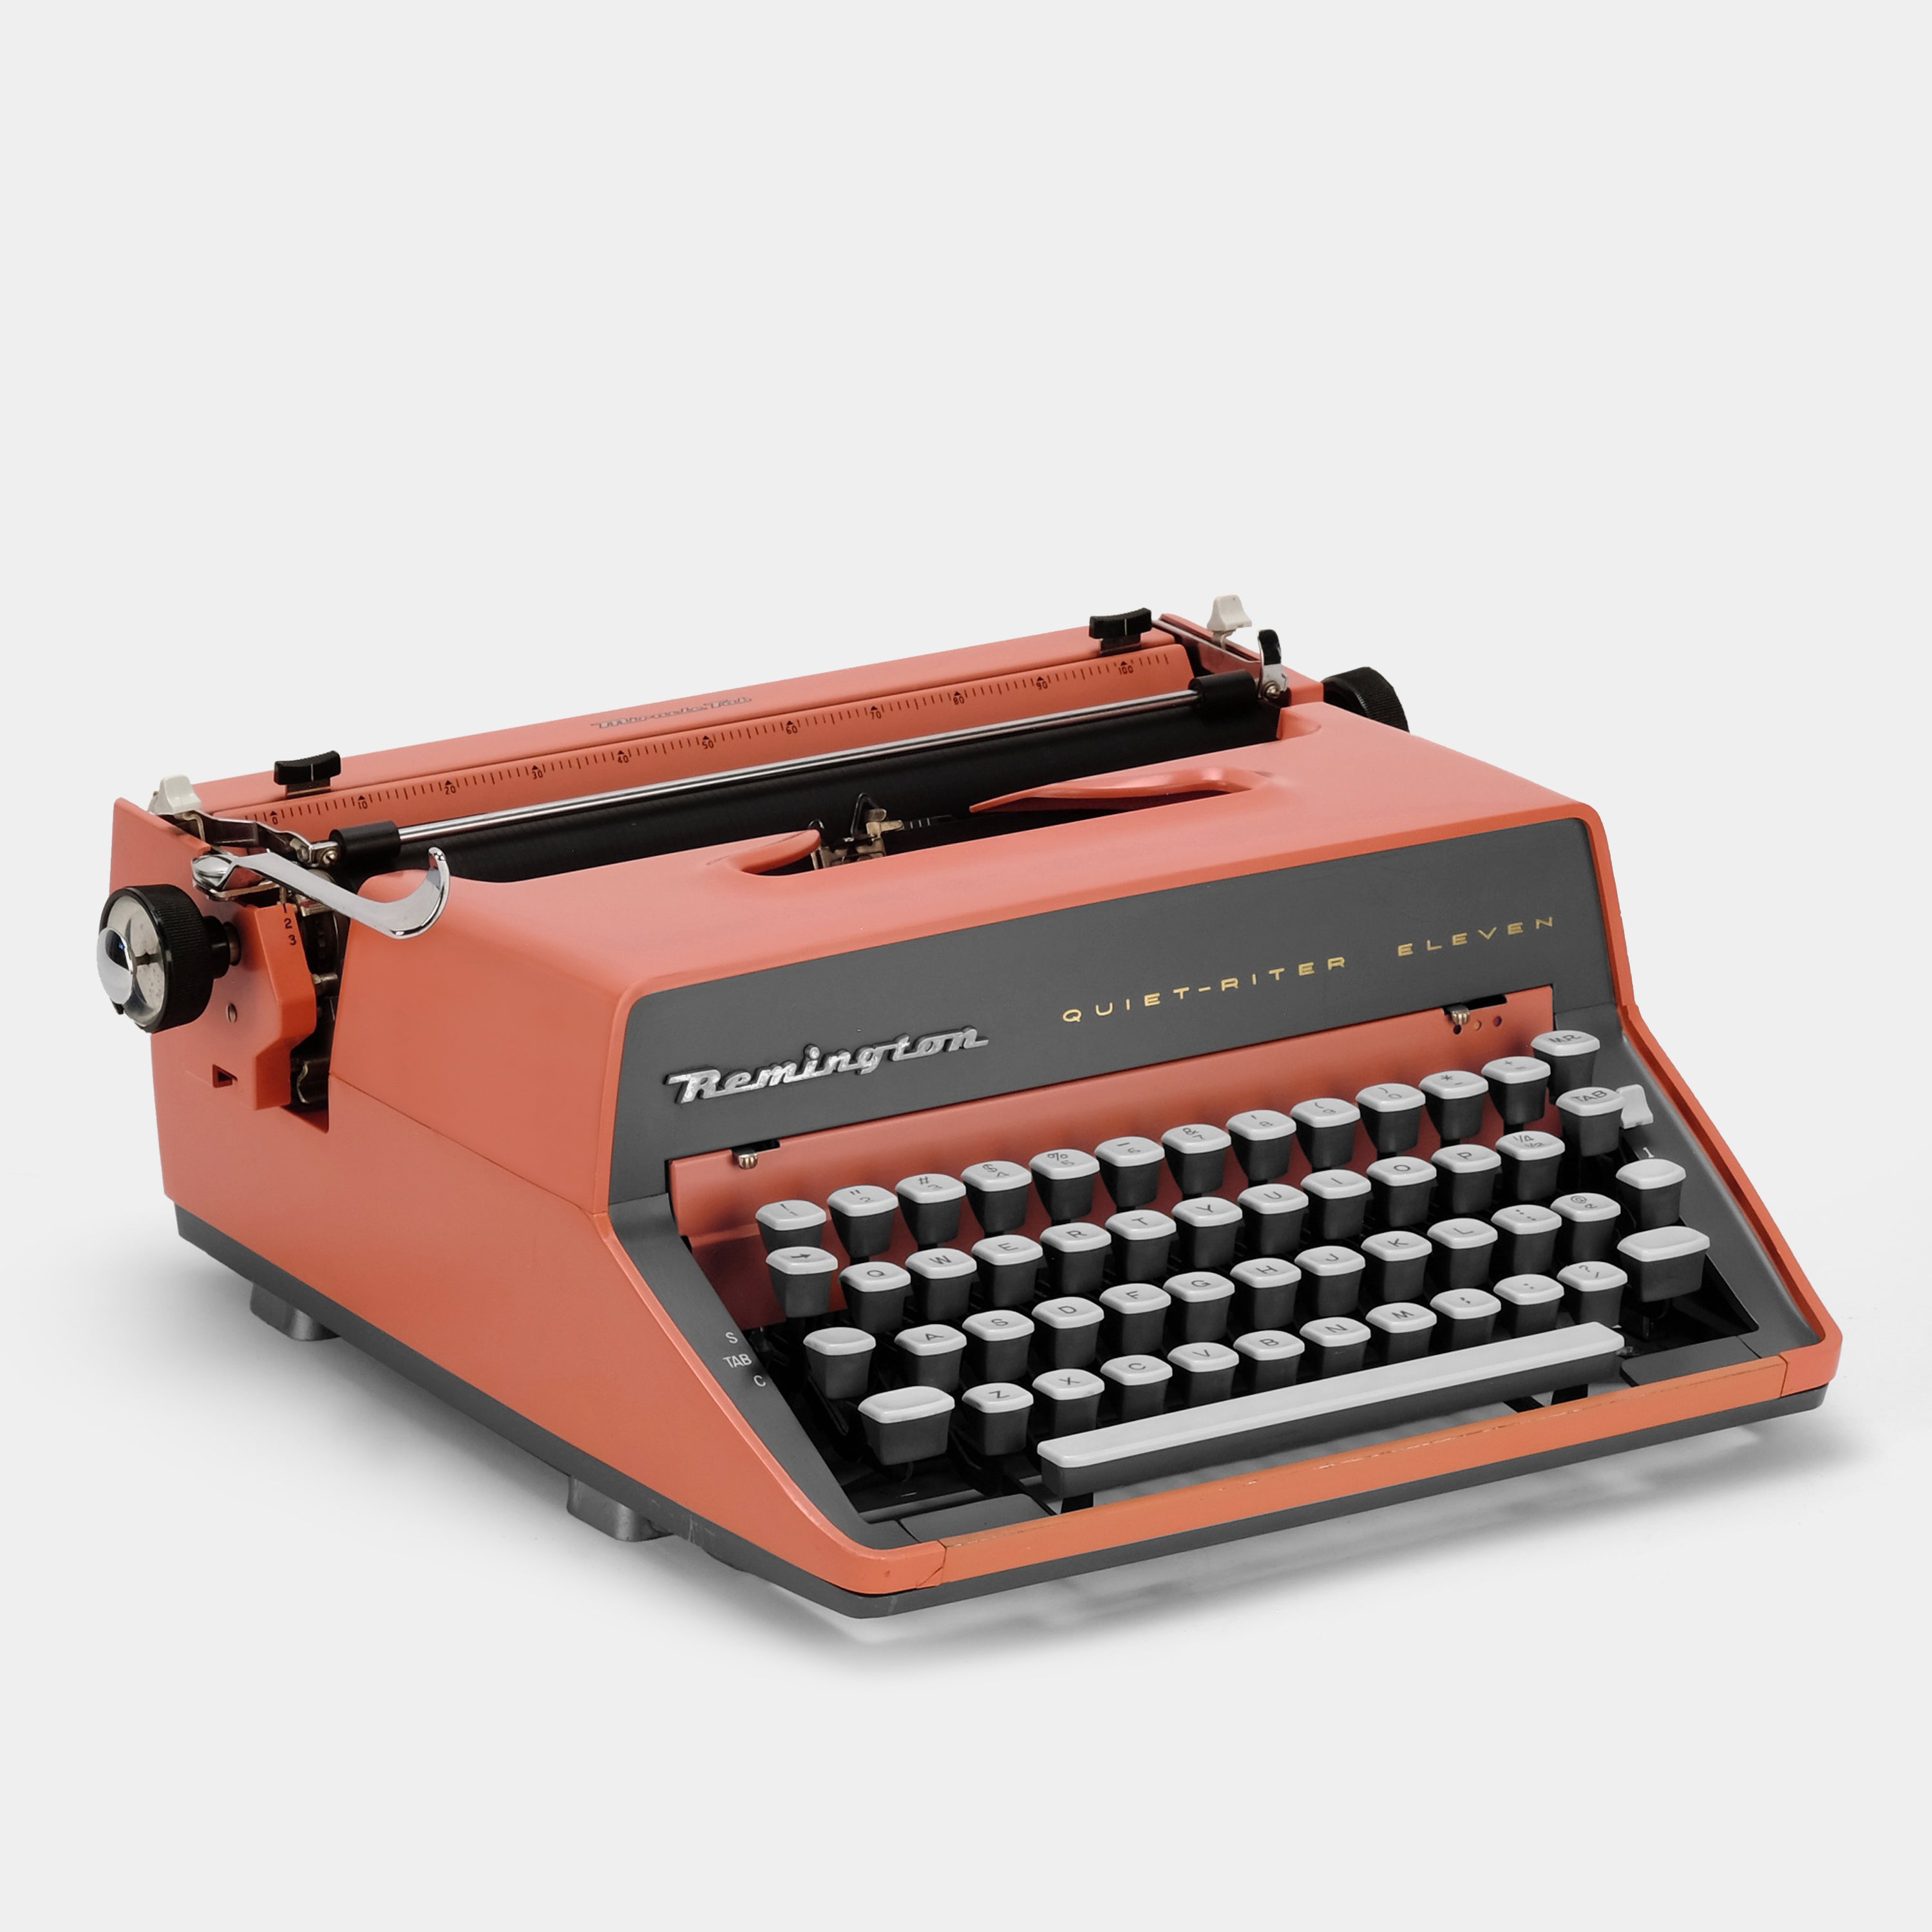 Remington Quiet-Riter Eleven Manual Typewriter